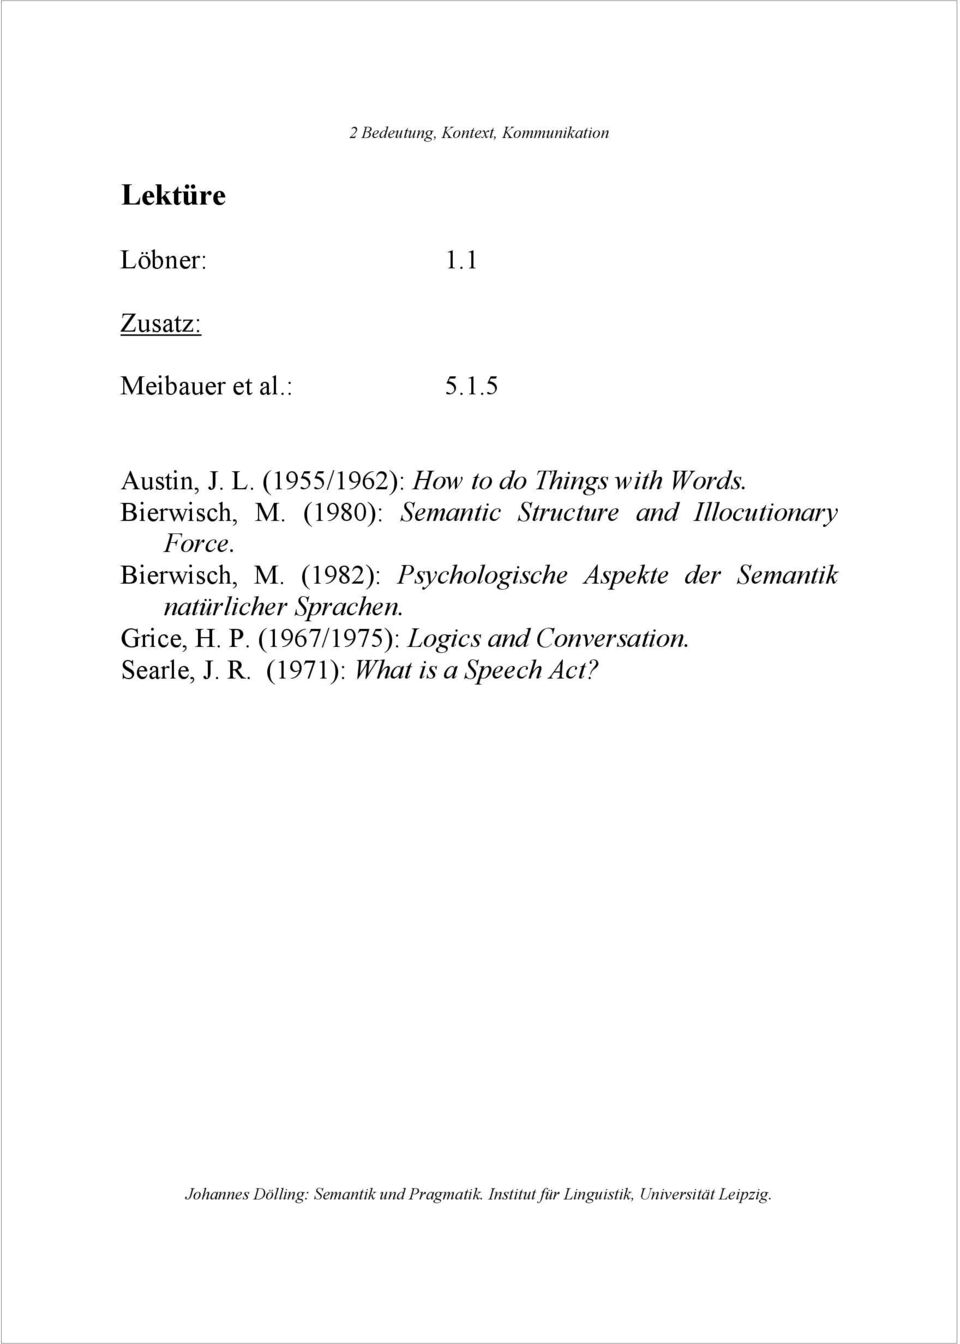 (1982): Psychologische Aspekte der Semantik natürlicher Sprachen. Grice, H. P. (1967/1975): Logics and Conversation.